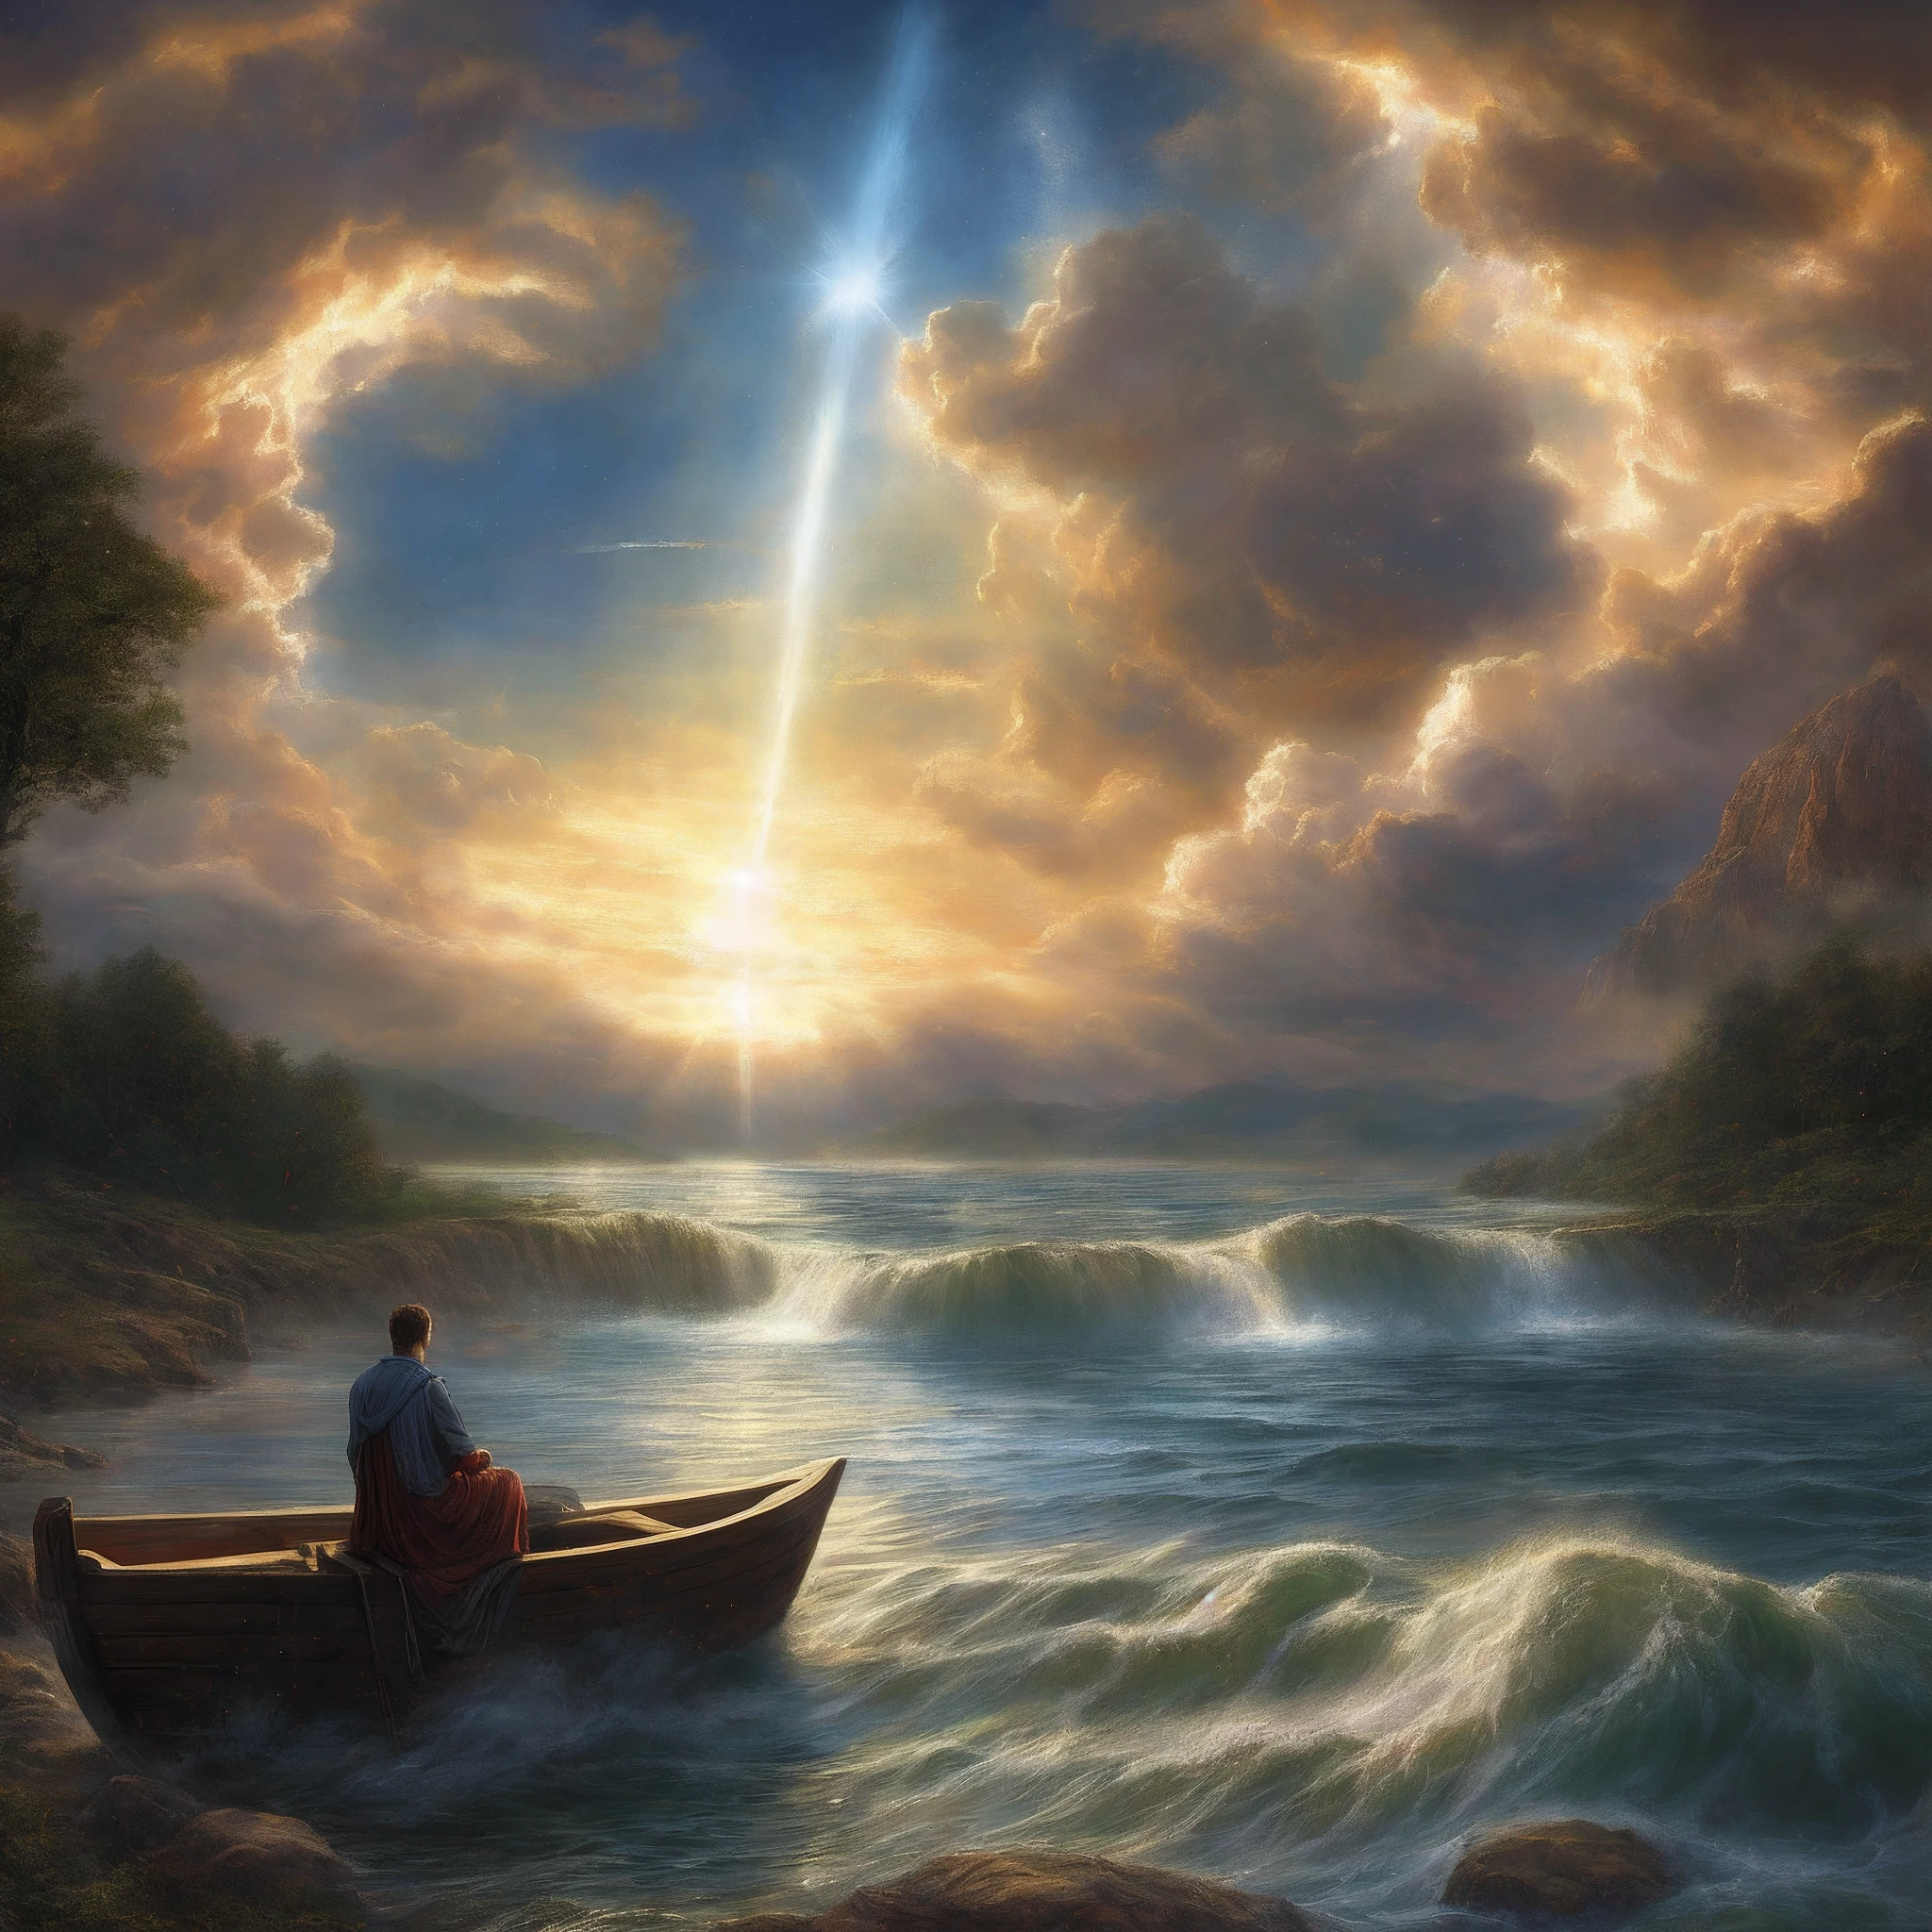 ⁶ 神說:
  — 諸水之間要有空氣，水與水之間要有空氣.
⁷ 神造了空氣，並將空氣以下的水和空氣以上的水分開. 事情就這樣發生了.
⁸ 神向穹蒼呼喚 "天". 有下午和早上, 第二天. 

創世記 1:6-8, 畫中一個人坐在湖上的船上, inspirado em 克里斯托夫·瓦赫, 靈感來自馬克·基斯利, 導演是: 克里斯托夫·瓦赫, 作者：Johfra Bosschart, 曾經創造過的美麗形象, 神太陽光線, 靈感來自 Johfra Bosschart, 盧斯天體, 由 Jason A 提供. 恩格尔, 導演是: 亞歷山大·庫查斯基, 月光之神的光芒